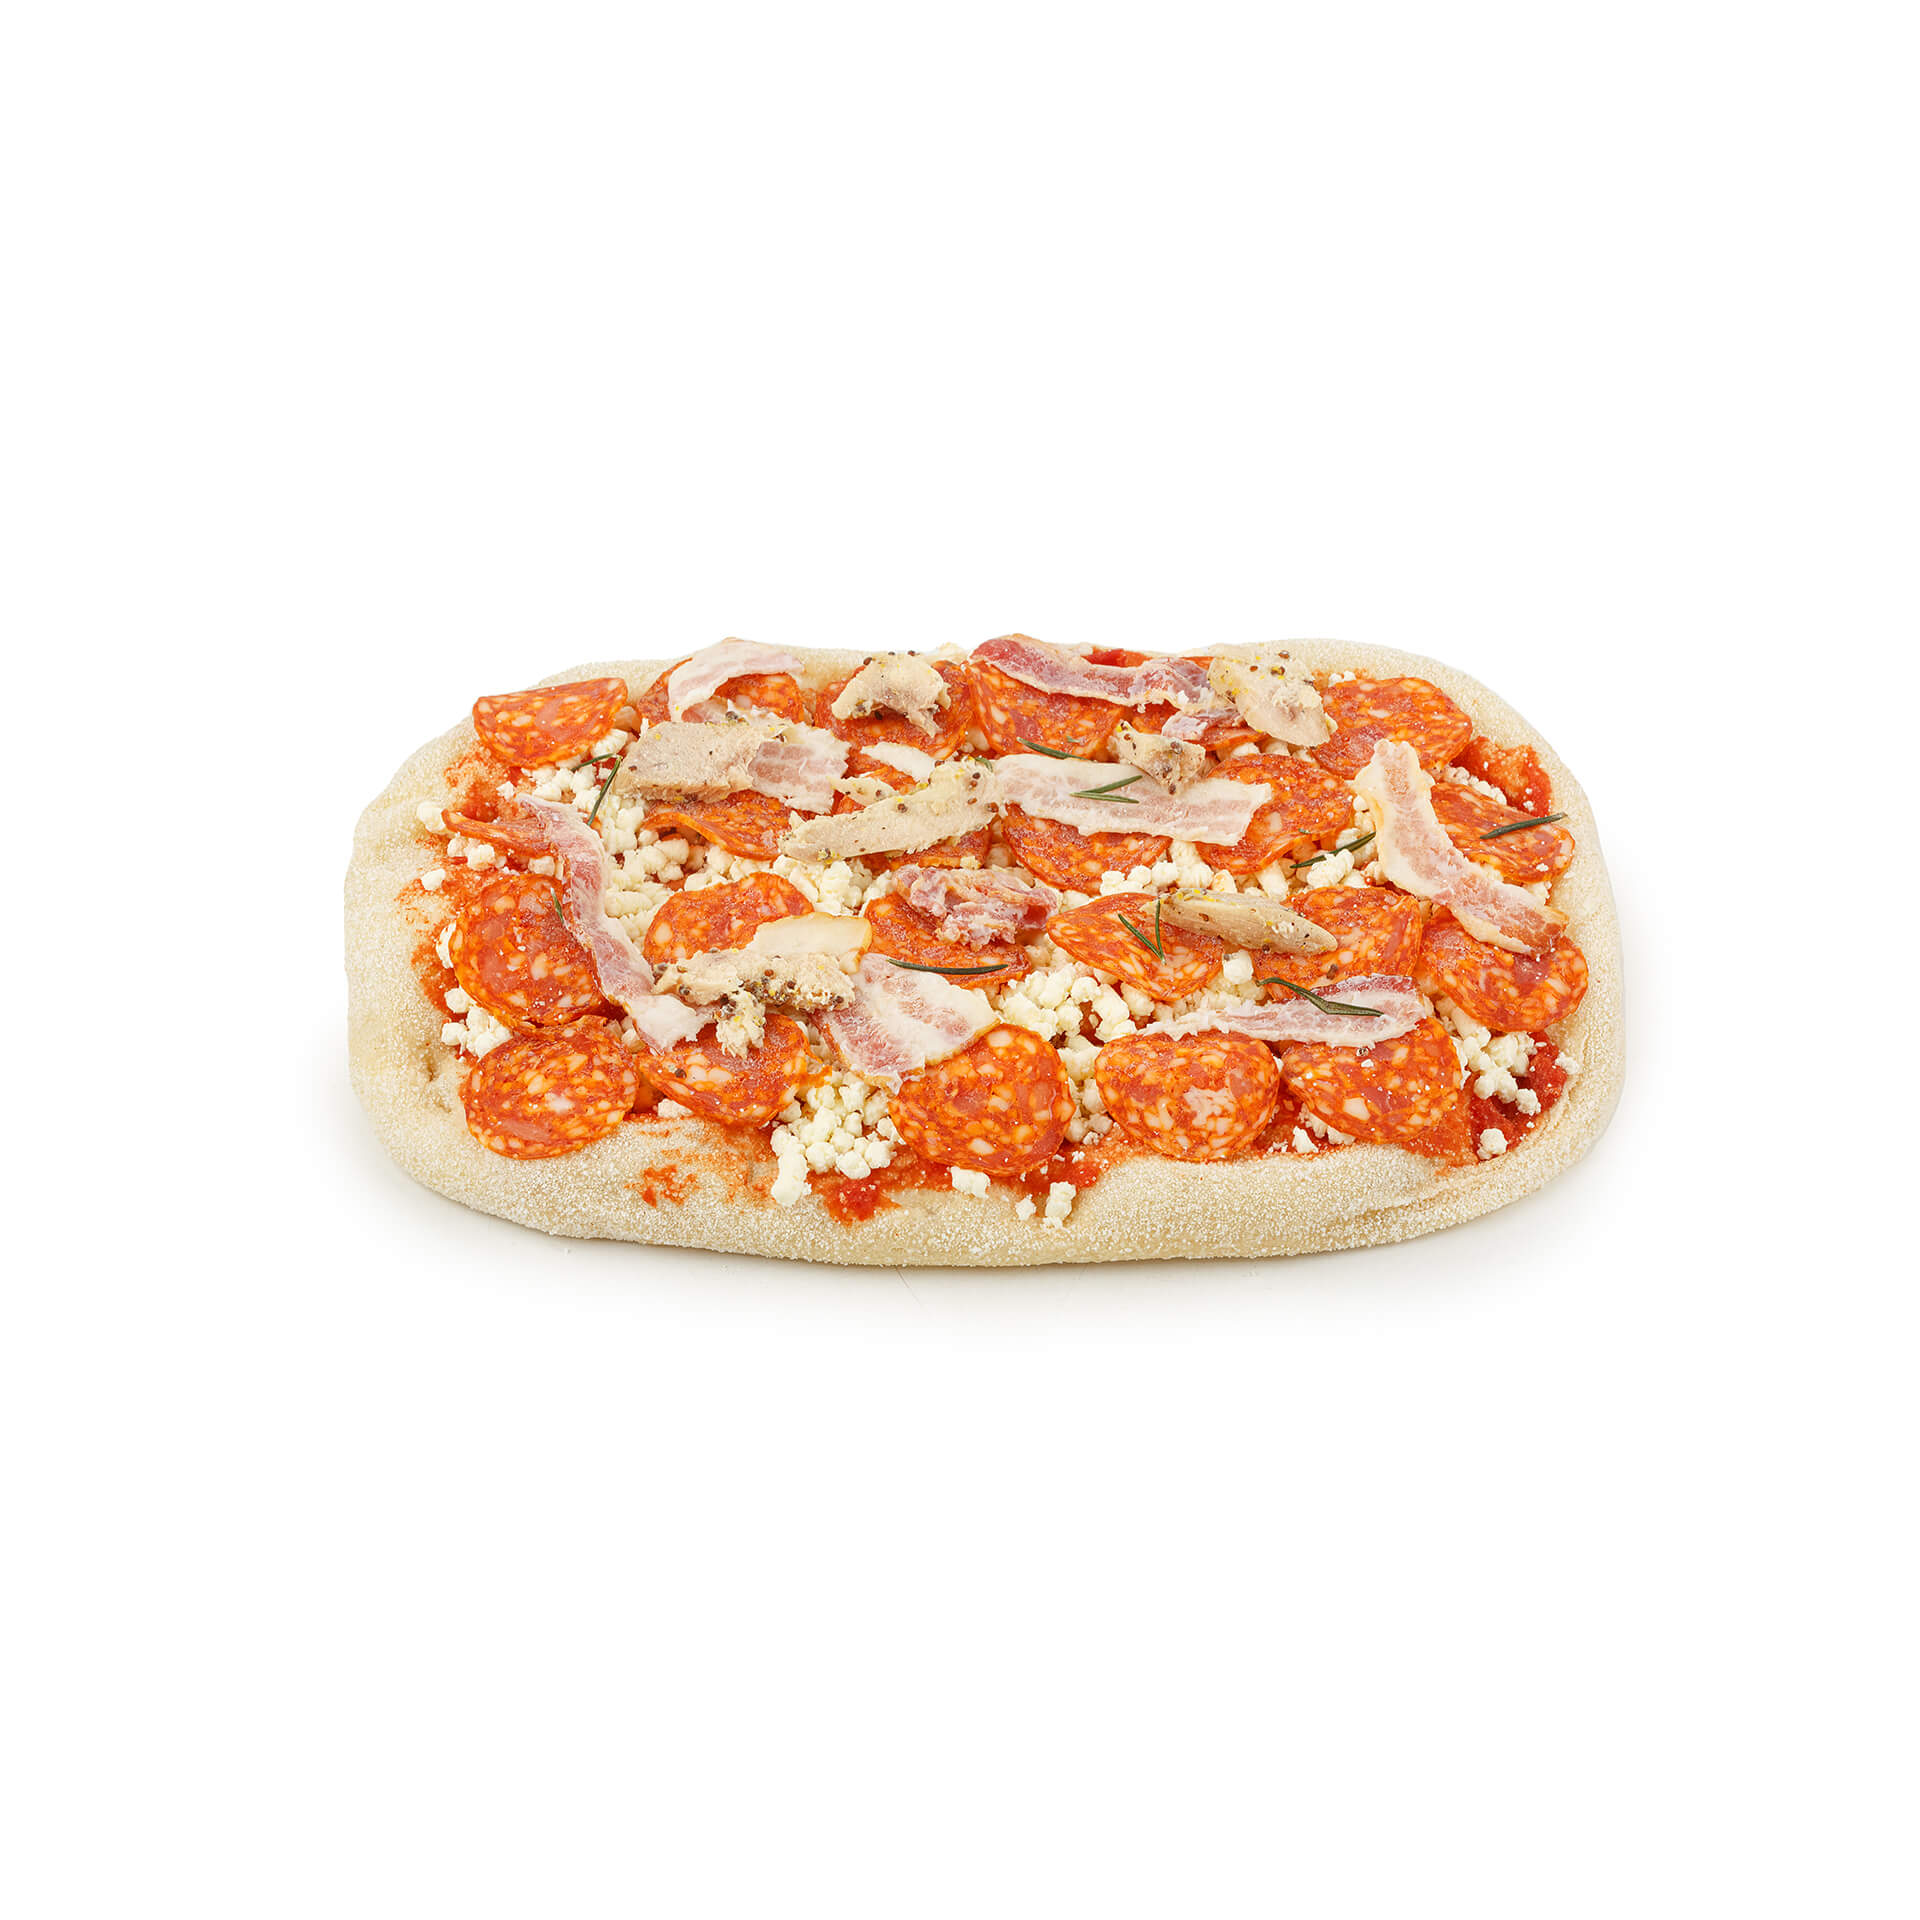 Пицца "Мясная" с чоризо, беконом и курицей полуфабрикат замороженный Maestrello 445 г 8705LED, общий вид, купить оптом с доставкой по москве и московской области, недорого, низкая цена